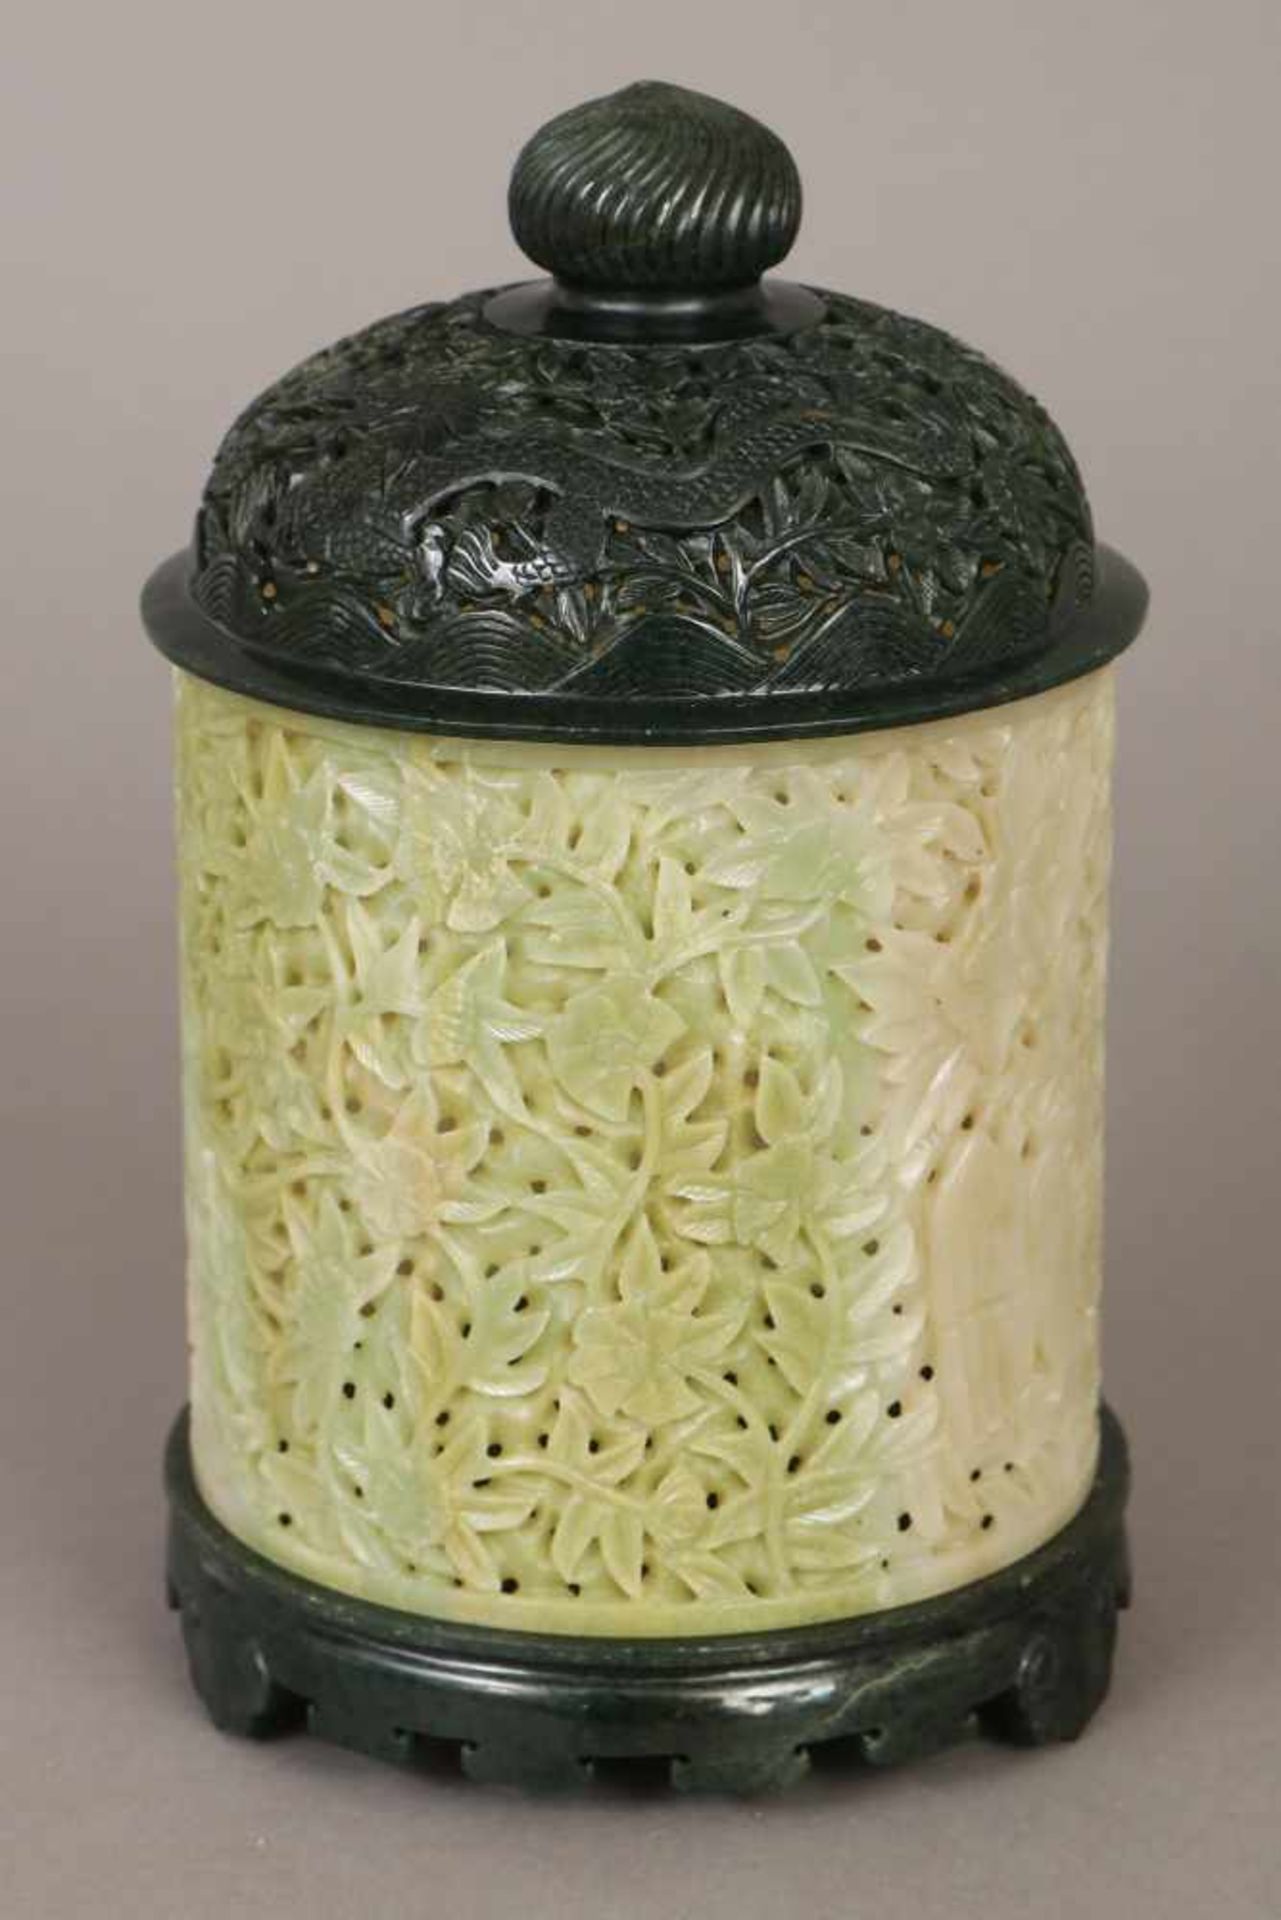 Jade-Räuchergefäßgrüne und dunkelgrüne Jade (u.a. Hofan-Jade), zylindrisches Gefäß mit Relief- und